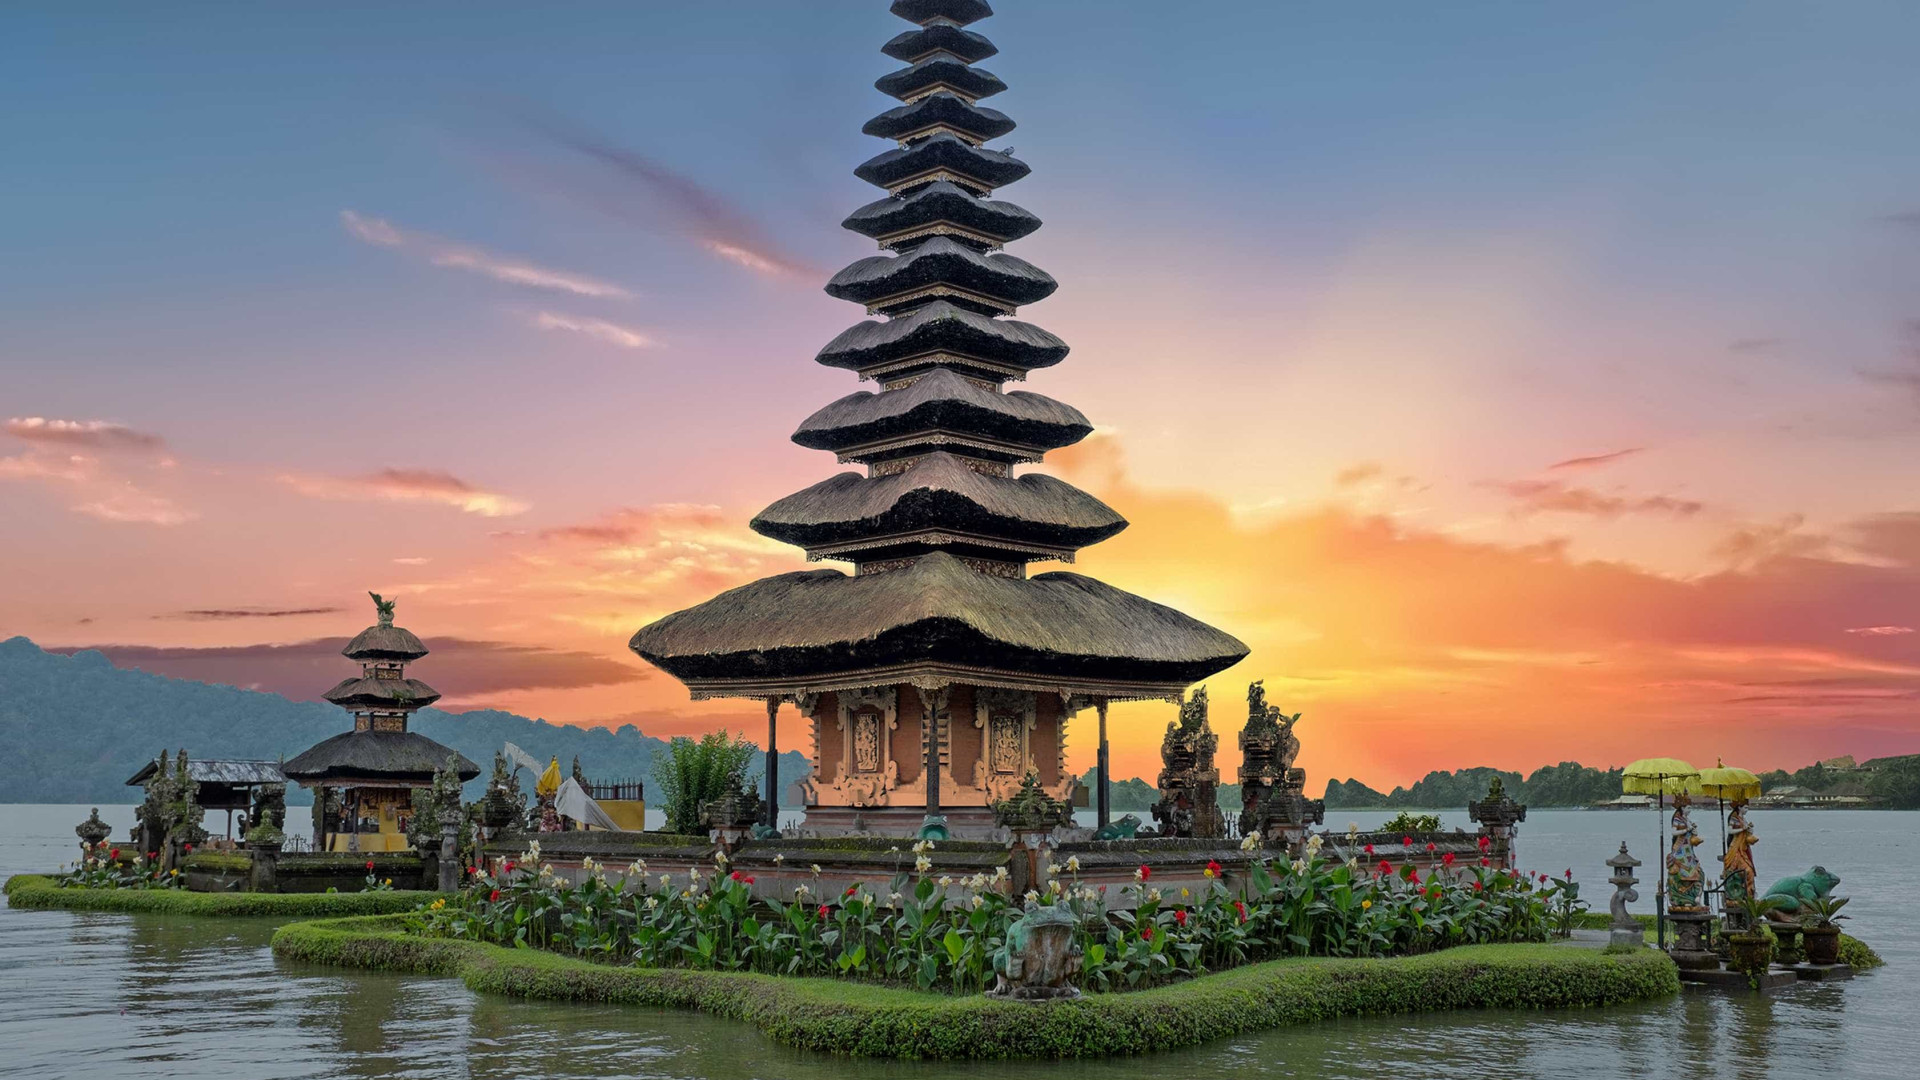 Confira o nascer do sol em Bali, um dos mais bonitos do mundo